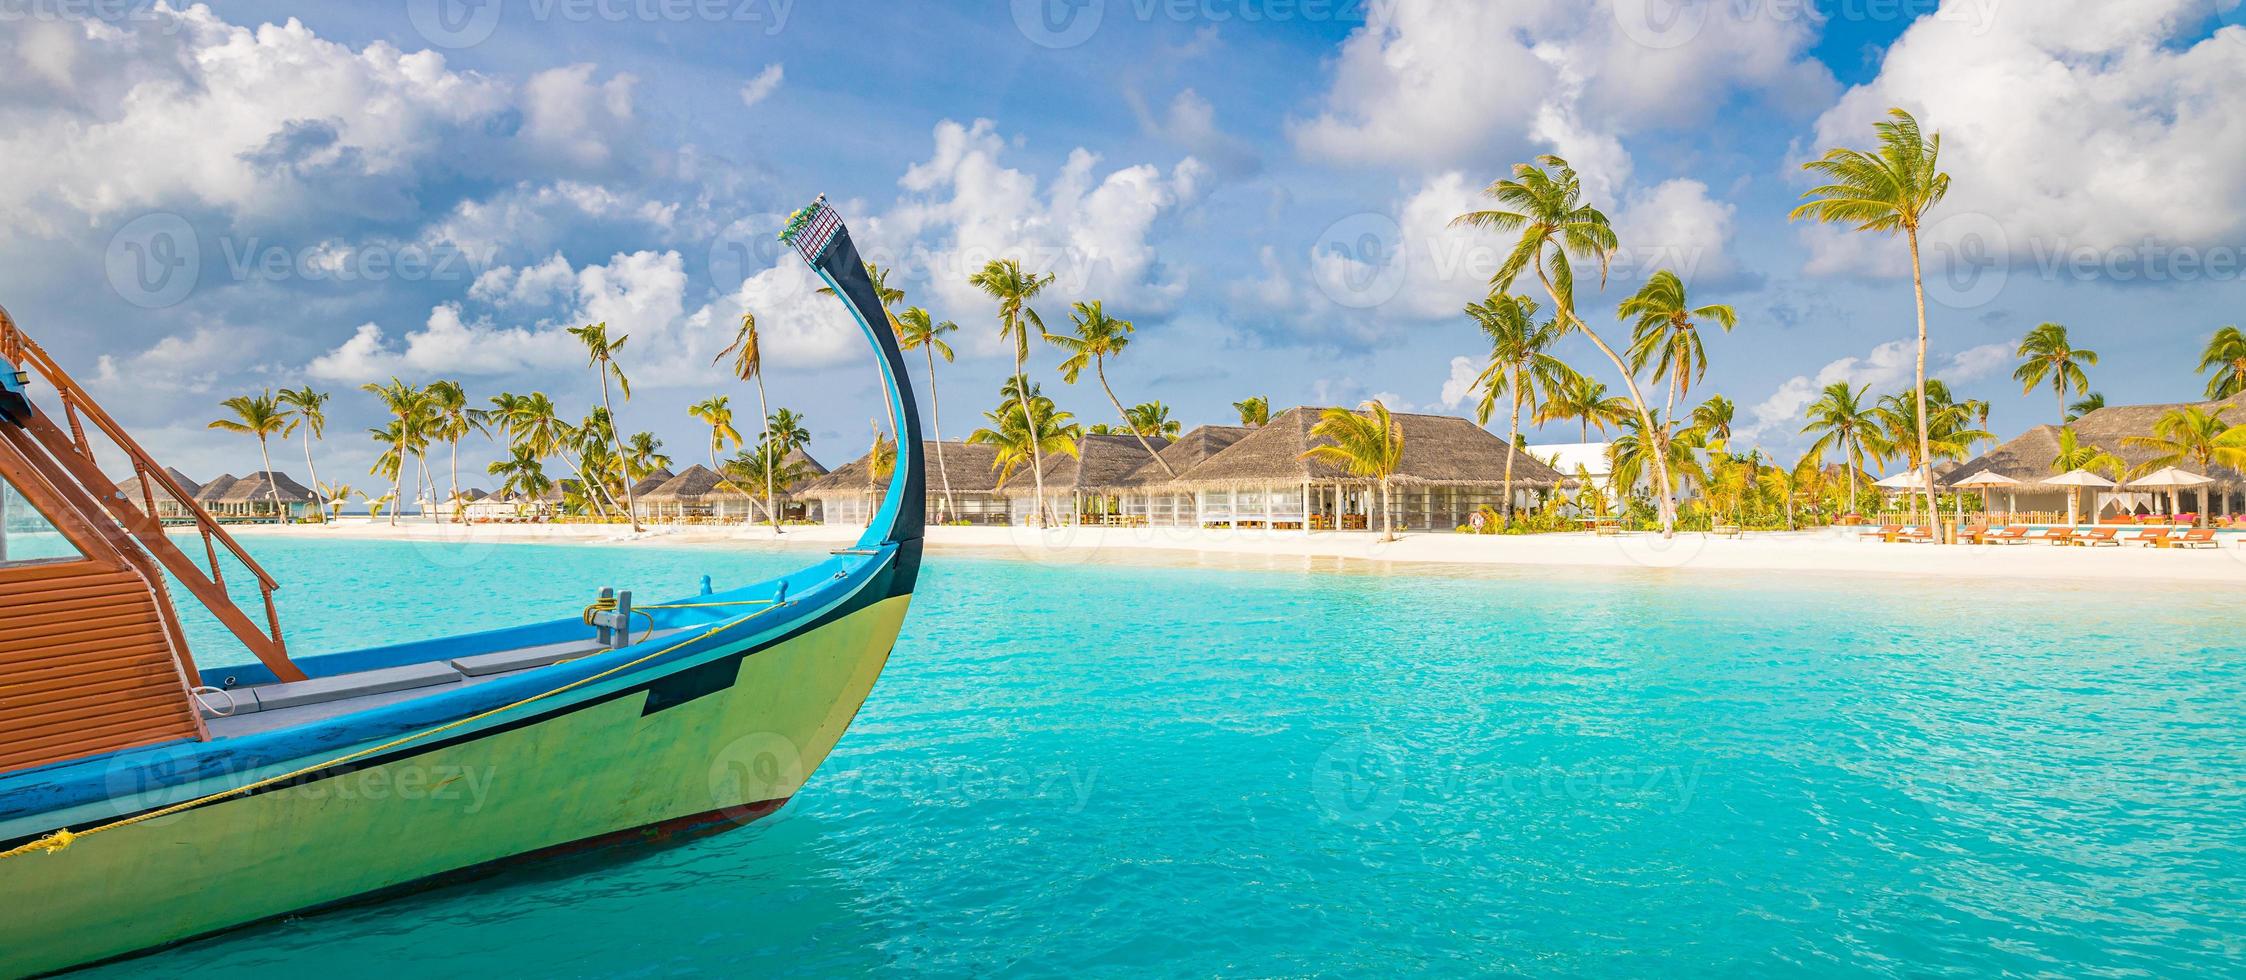 inspirador diseño de la playa de Maldivas. Maldivas barco tradicional dhoni y mar azul perfecto con laguna. hotel resort tropical de lujo con vista al paraíso. costa idílica, orilla de arena blanca, palmeras foto